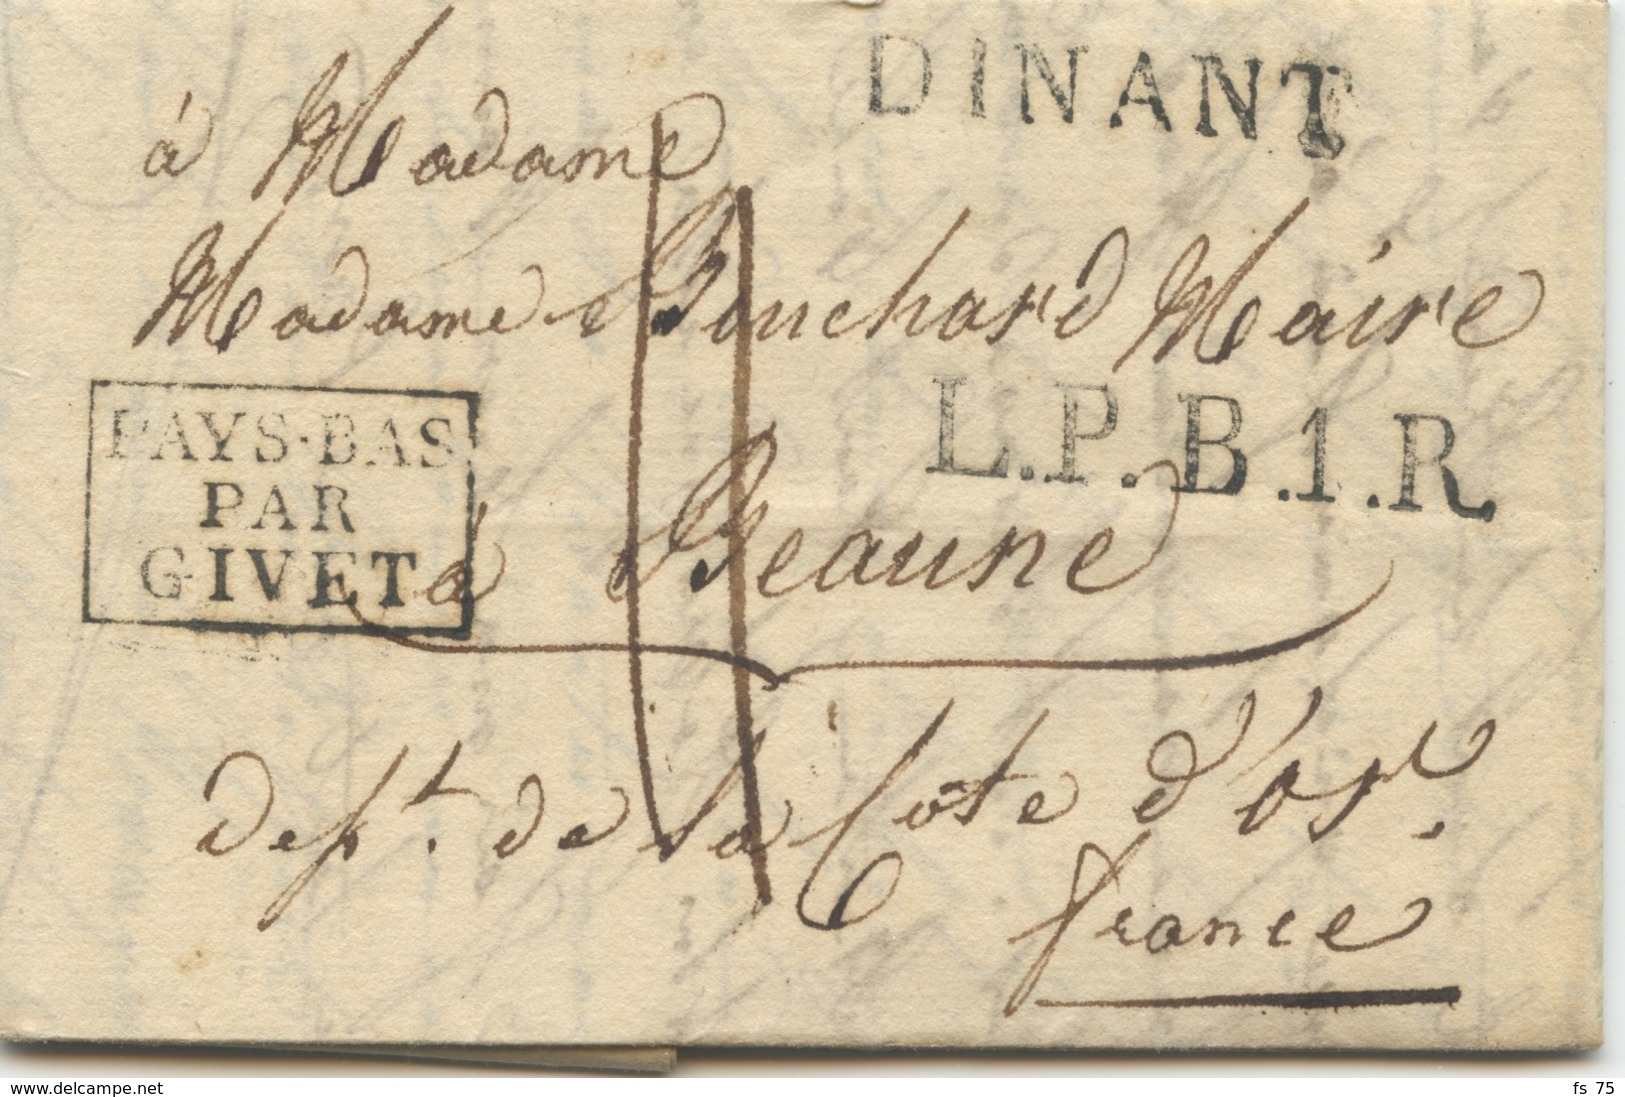 BELGIQUE - DINANT + L.P.B.1.R. + PAYS BAS PAR GIVET SUR LETTRE AVEC TEXTE POUR LA FRANCE, 1818 - 1815-1830 (Holländische Periode)